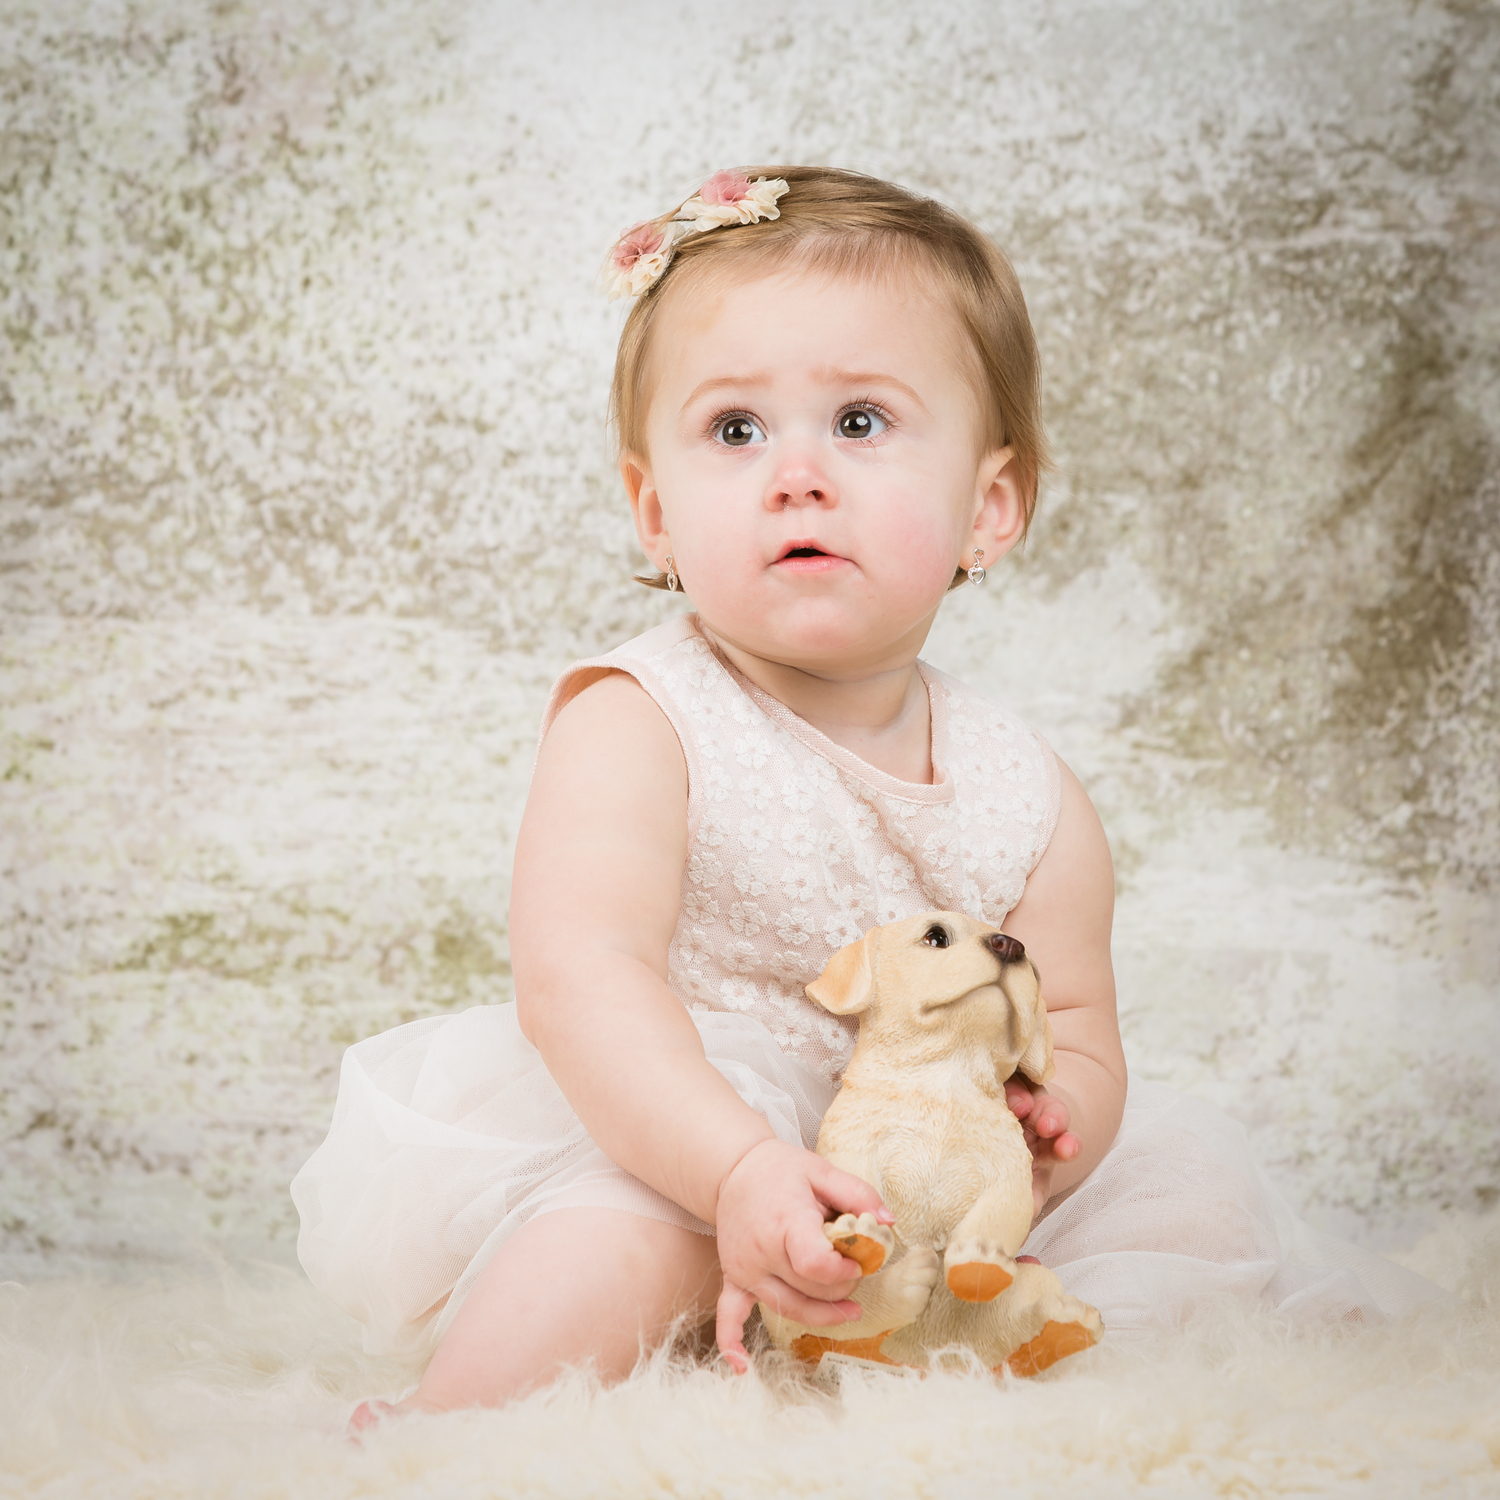 Spiksplinternieuw Babyfotografie - De leukste foto's van jouw kindje door Joyfotografie GA-88